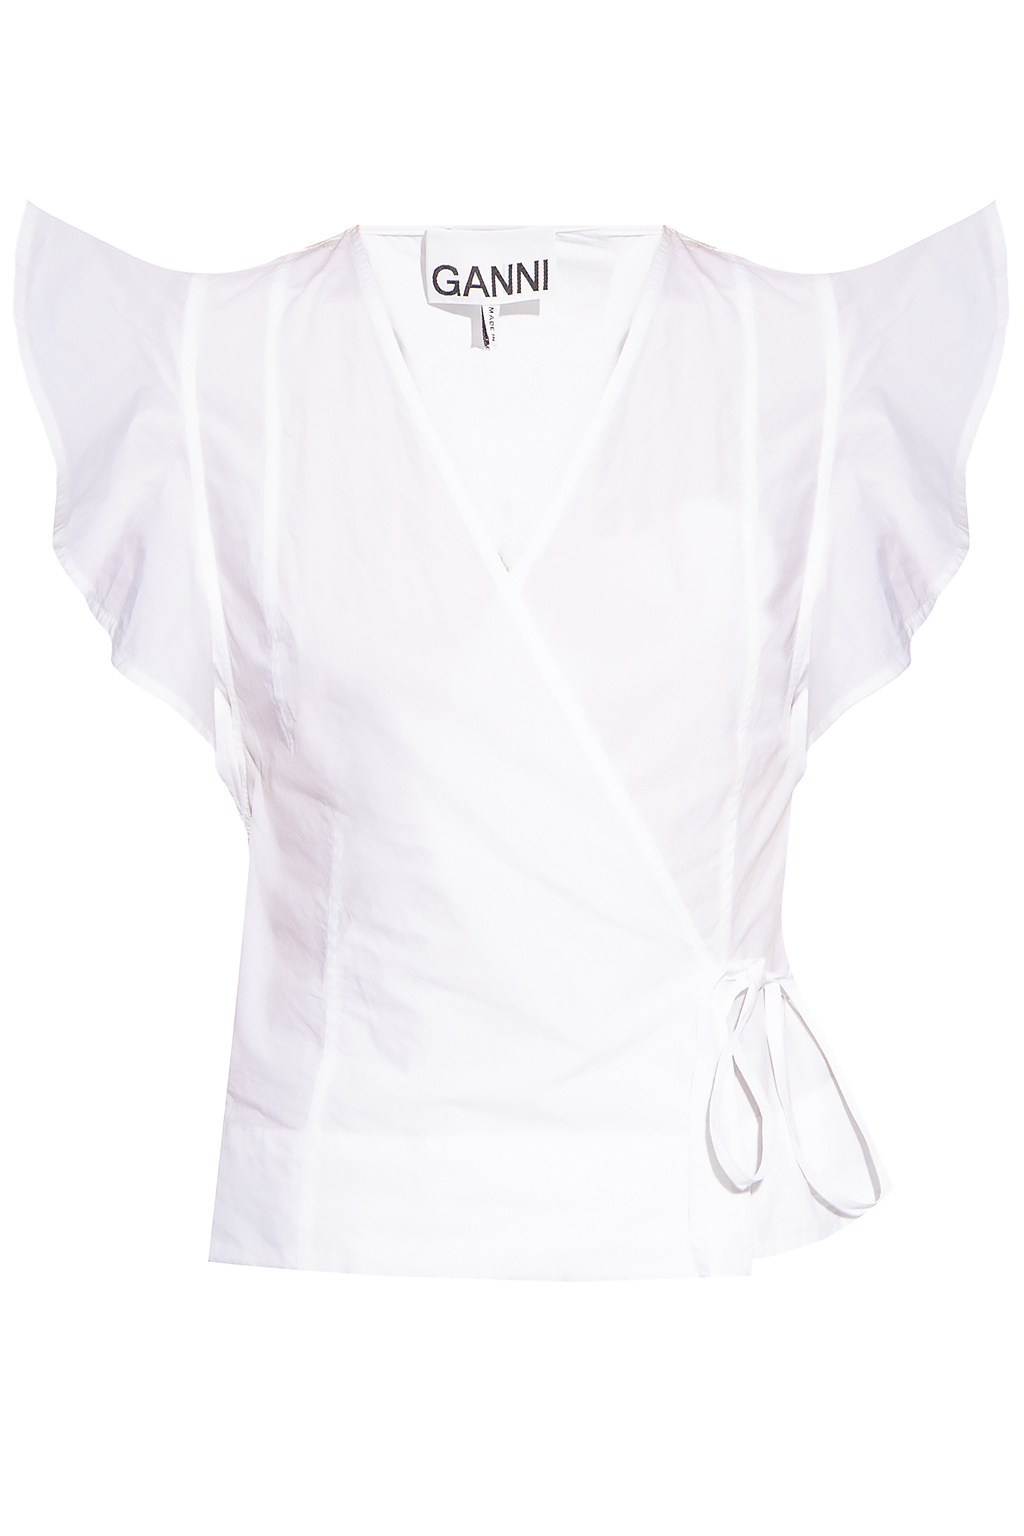 Ganni Top with tie belt